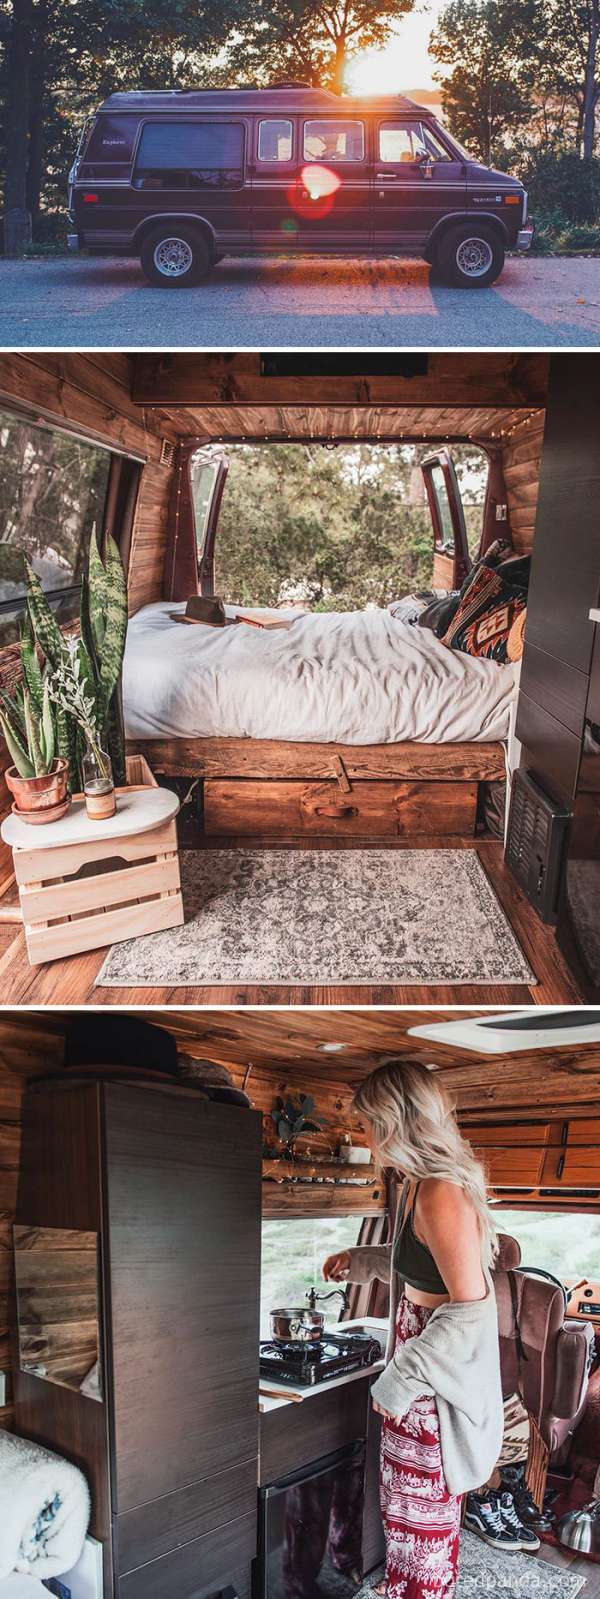 Un van transformé en une chambre en bois, confortable et écologique